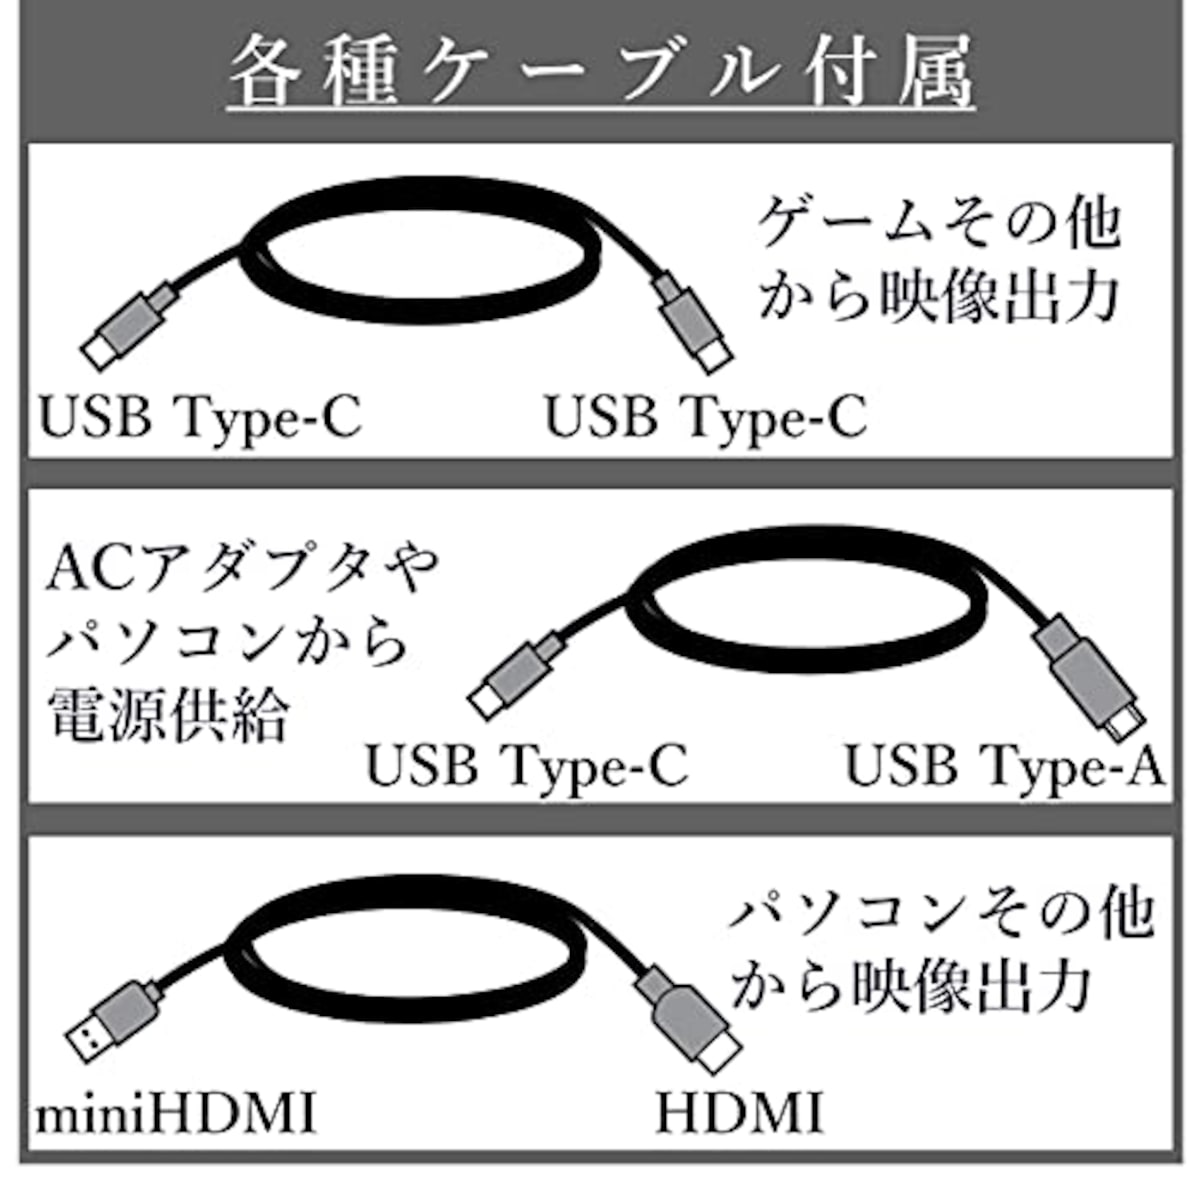  山善 モバイルモニター 15.6インチ モバイルディスプレイ 1080P 1670万色 日本設計 Type-C/HDMI-mini ブルーライト機能 IPSパネル ゲームモード搭載 (PS4 / XBOX/Switch/PC/タブレット 対応) 内蔵スピーカー搭載 薄型 軽量 QMM-156R画像7 